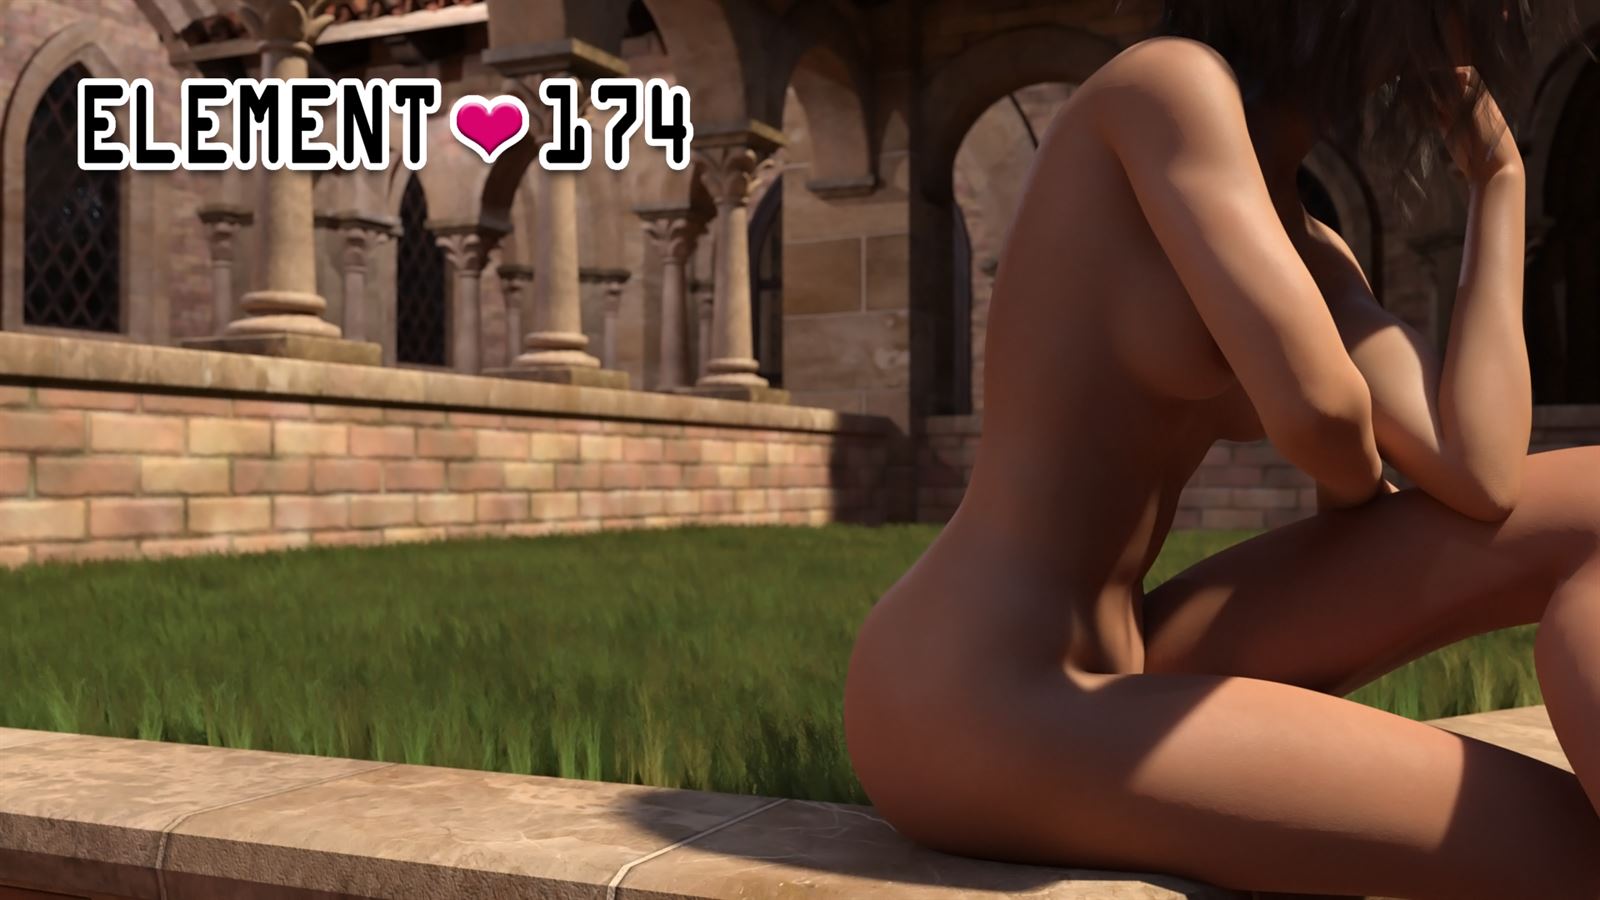 Element-174 Ren'py Porn Sex Game v.0.23c Download for Windows, MacOS, Linux